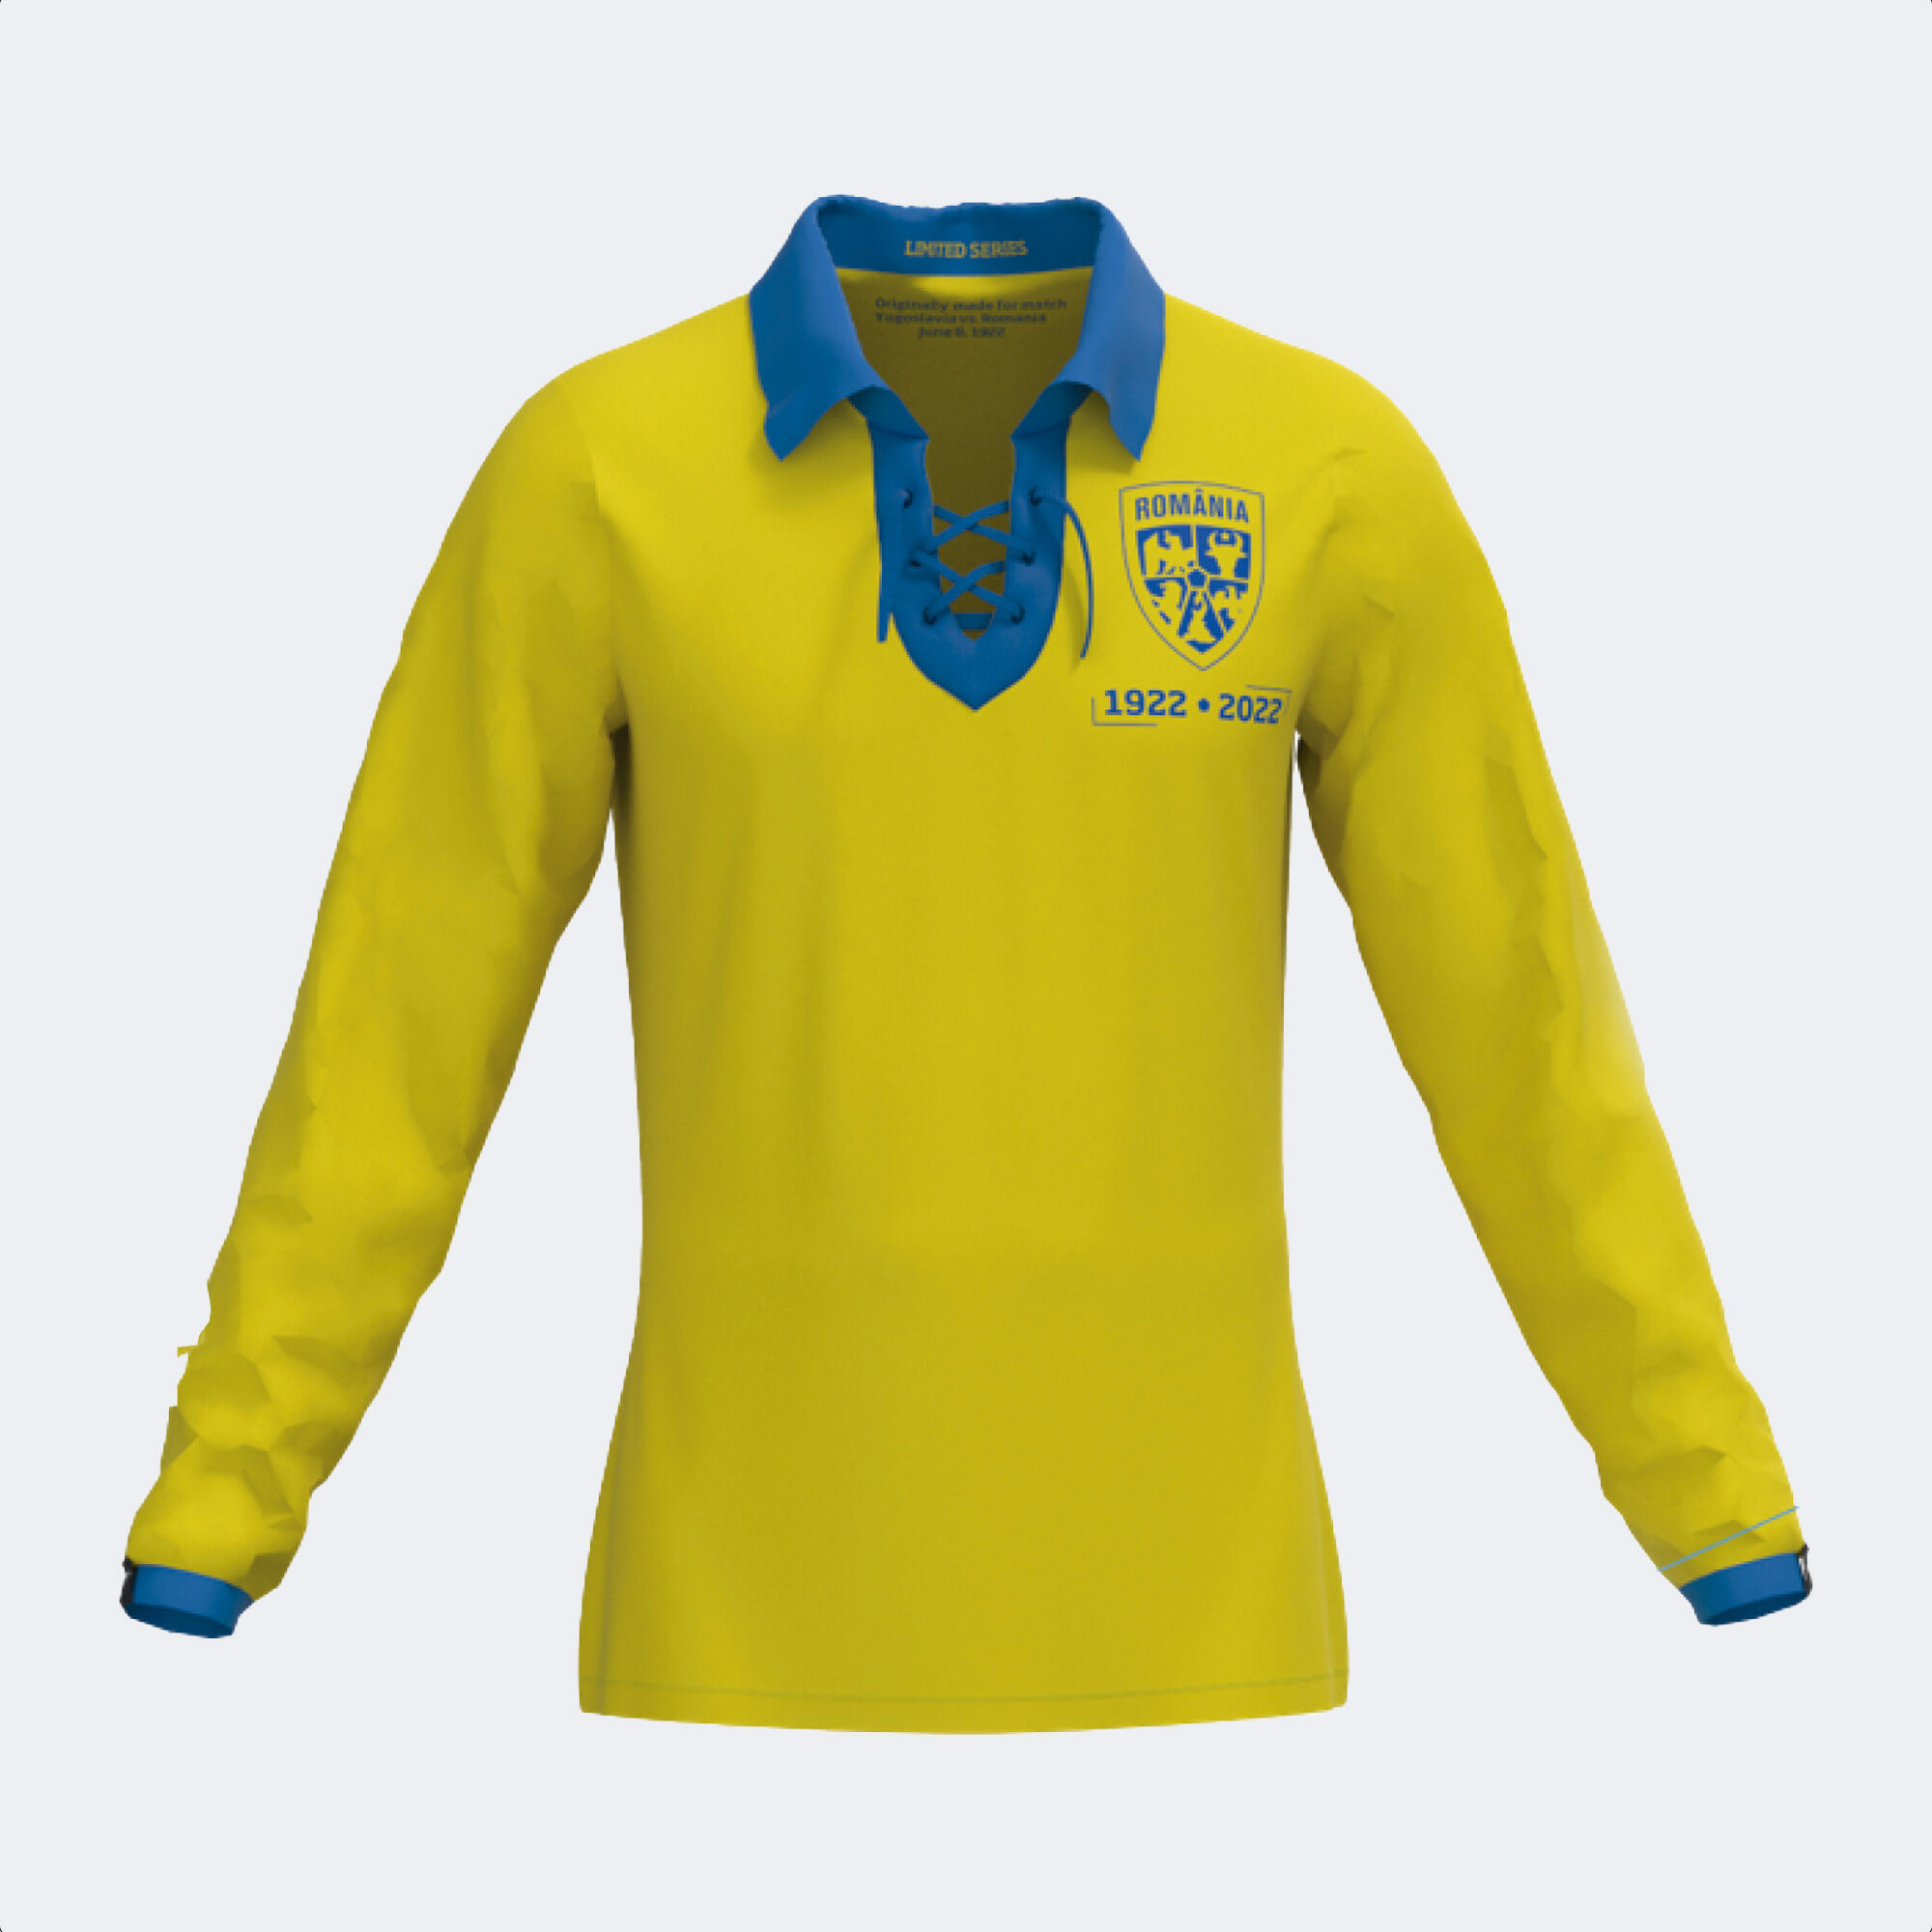 Camiseta Joma 2a Rumania 2021 2022 azul